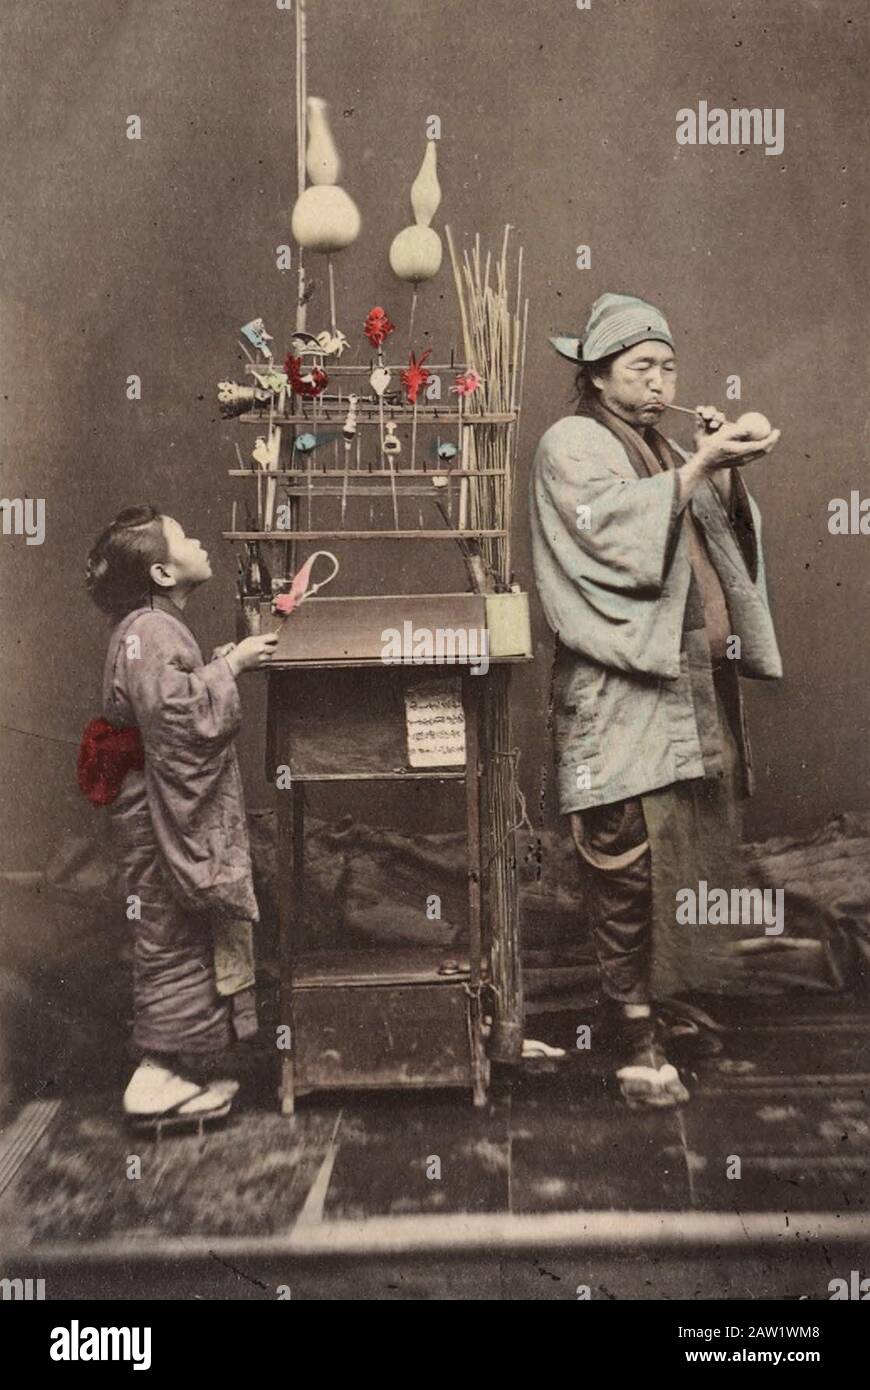 Vendeur itinérant de Candy au Japon, vers 1890 - Les confiseries faites à partir d'une pâte sont soufflées comme du verre dans diverses formes et permis de durcir Banque D'Images